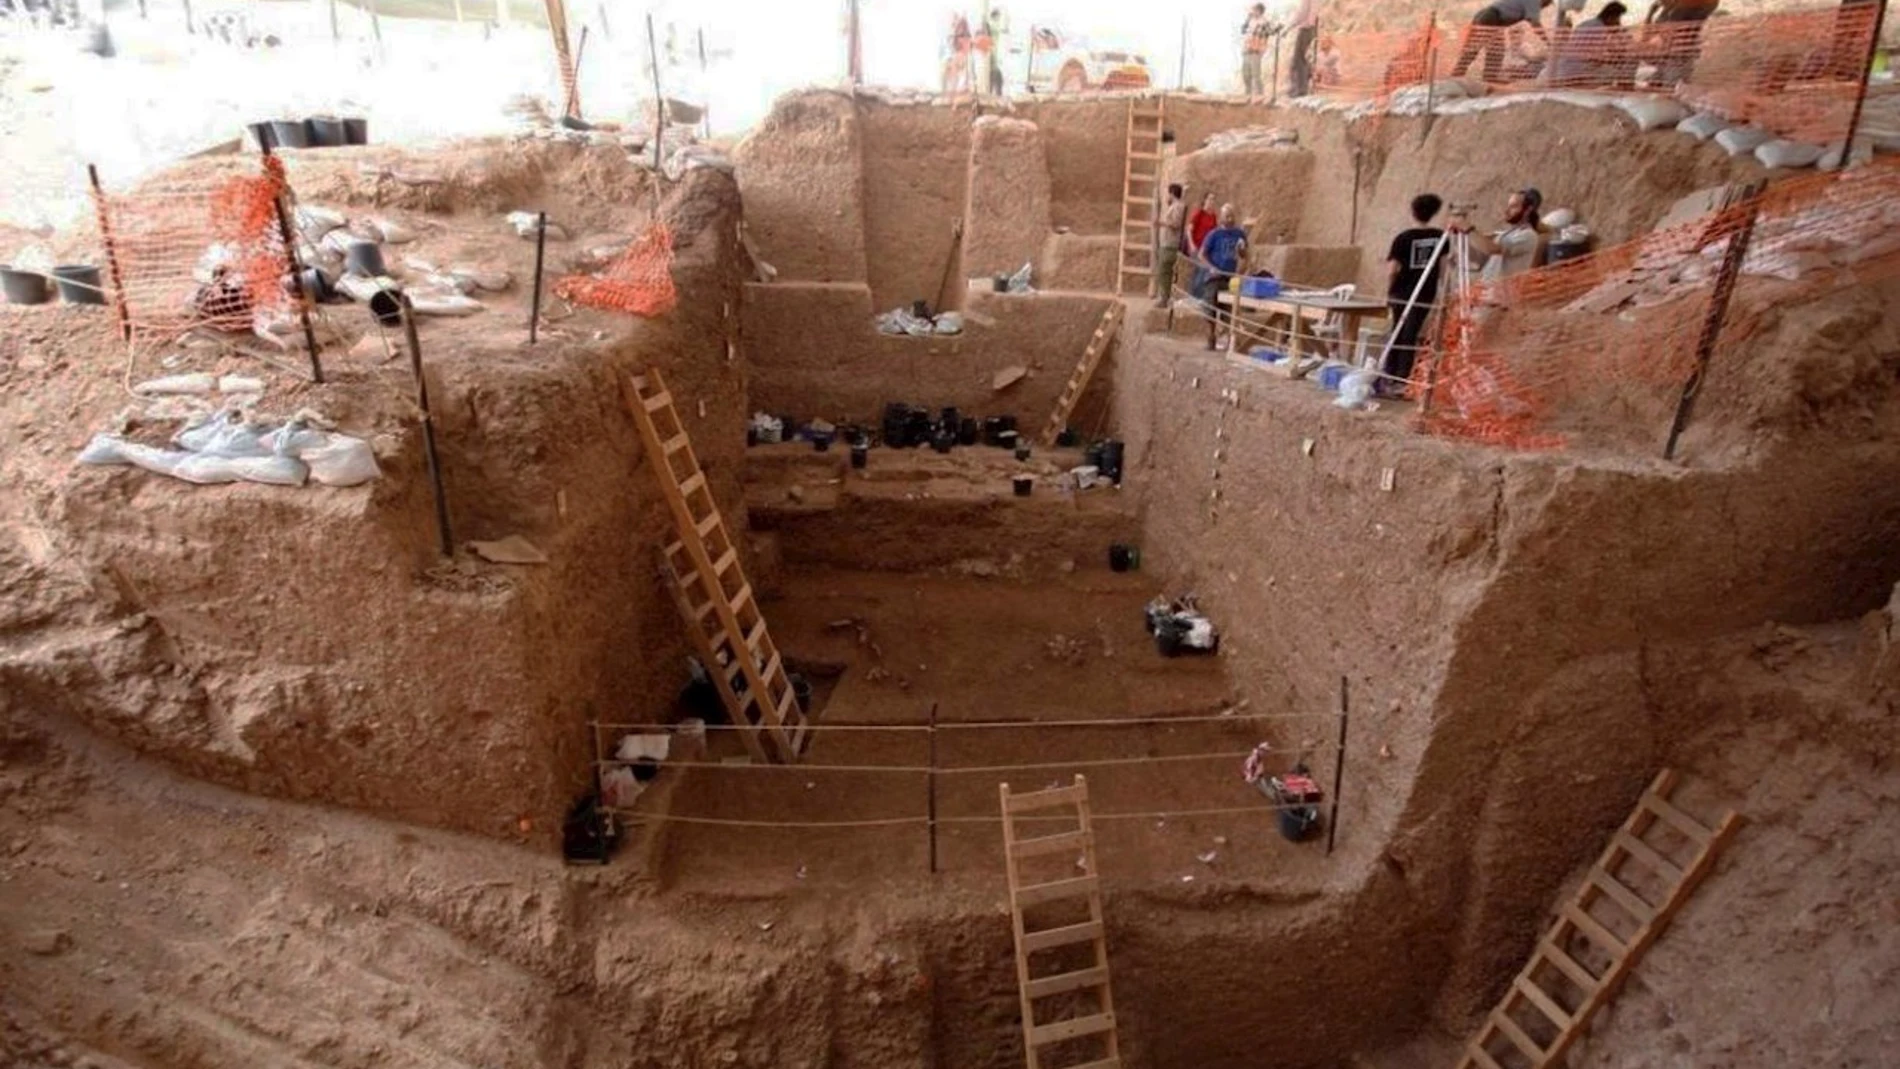 Vista de la sección profunda durante la excavación en Nesher Ramla, yacimiento en Israel donde se han hallado restos fósiles (un fragmento de hueso parietal de un cráneo y una mandíbula casi completa) de unos 130.000 años